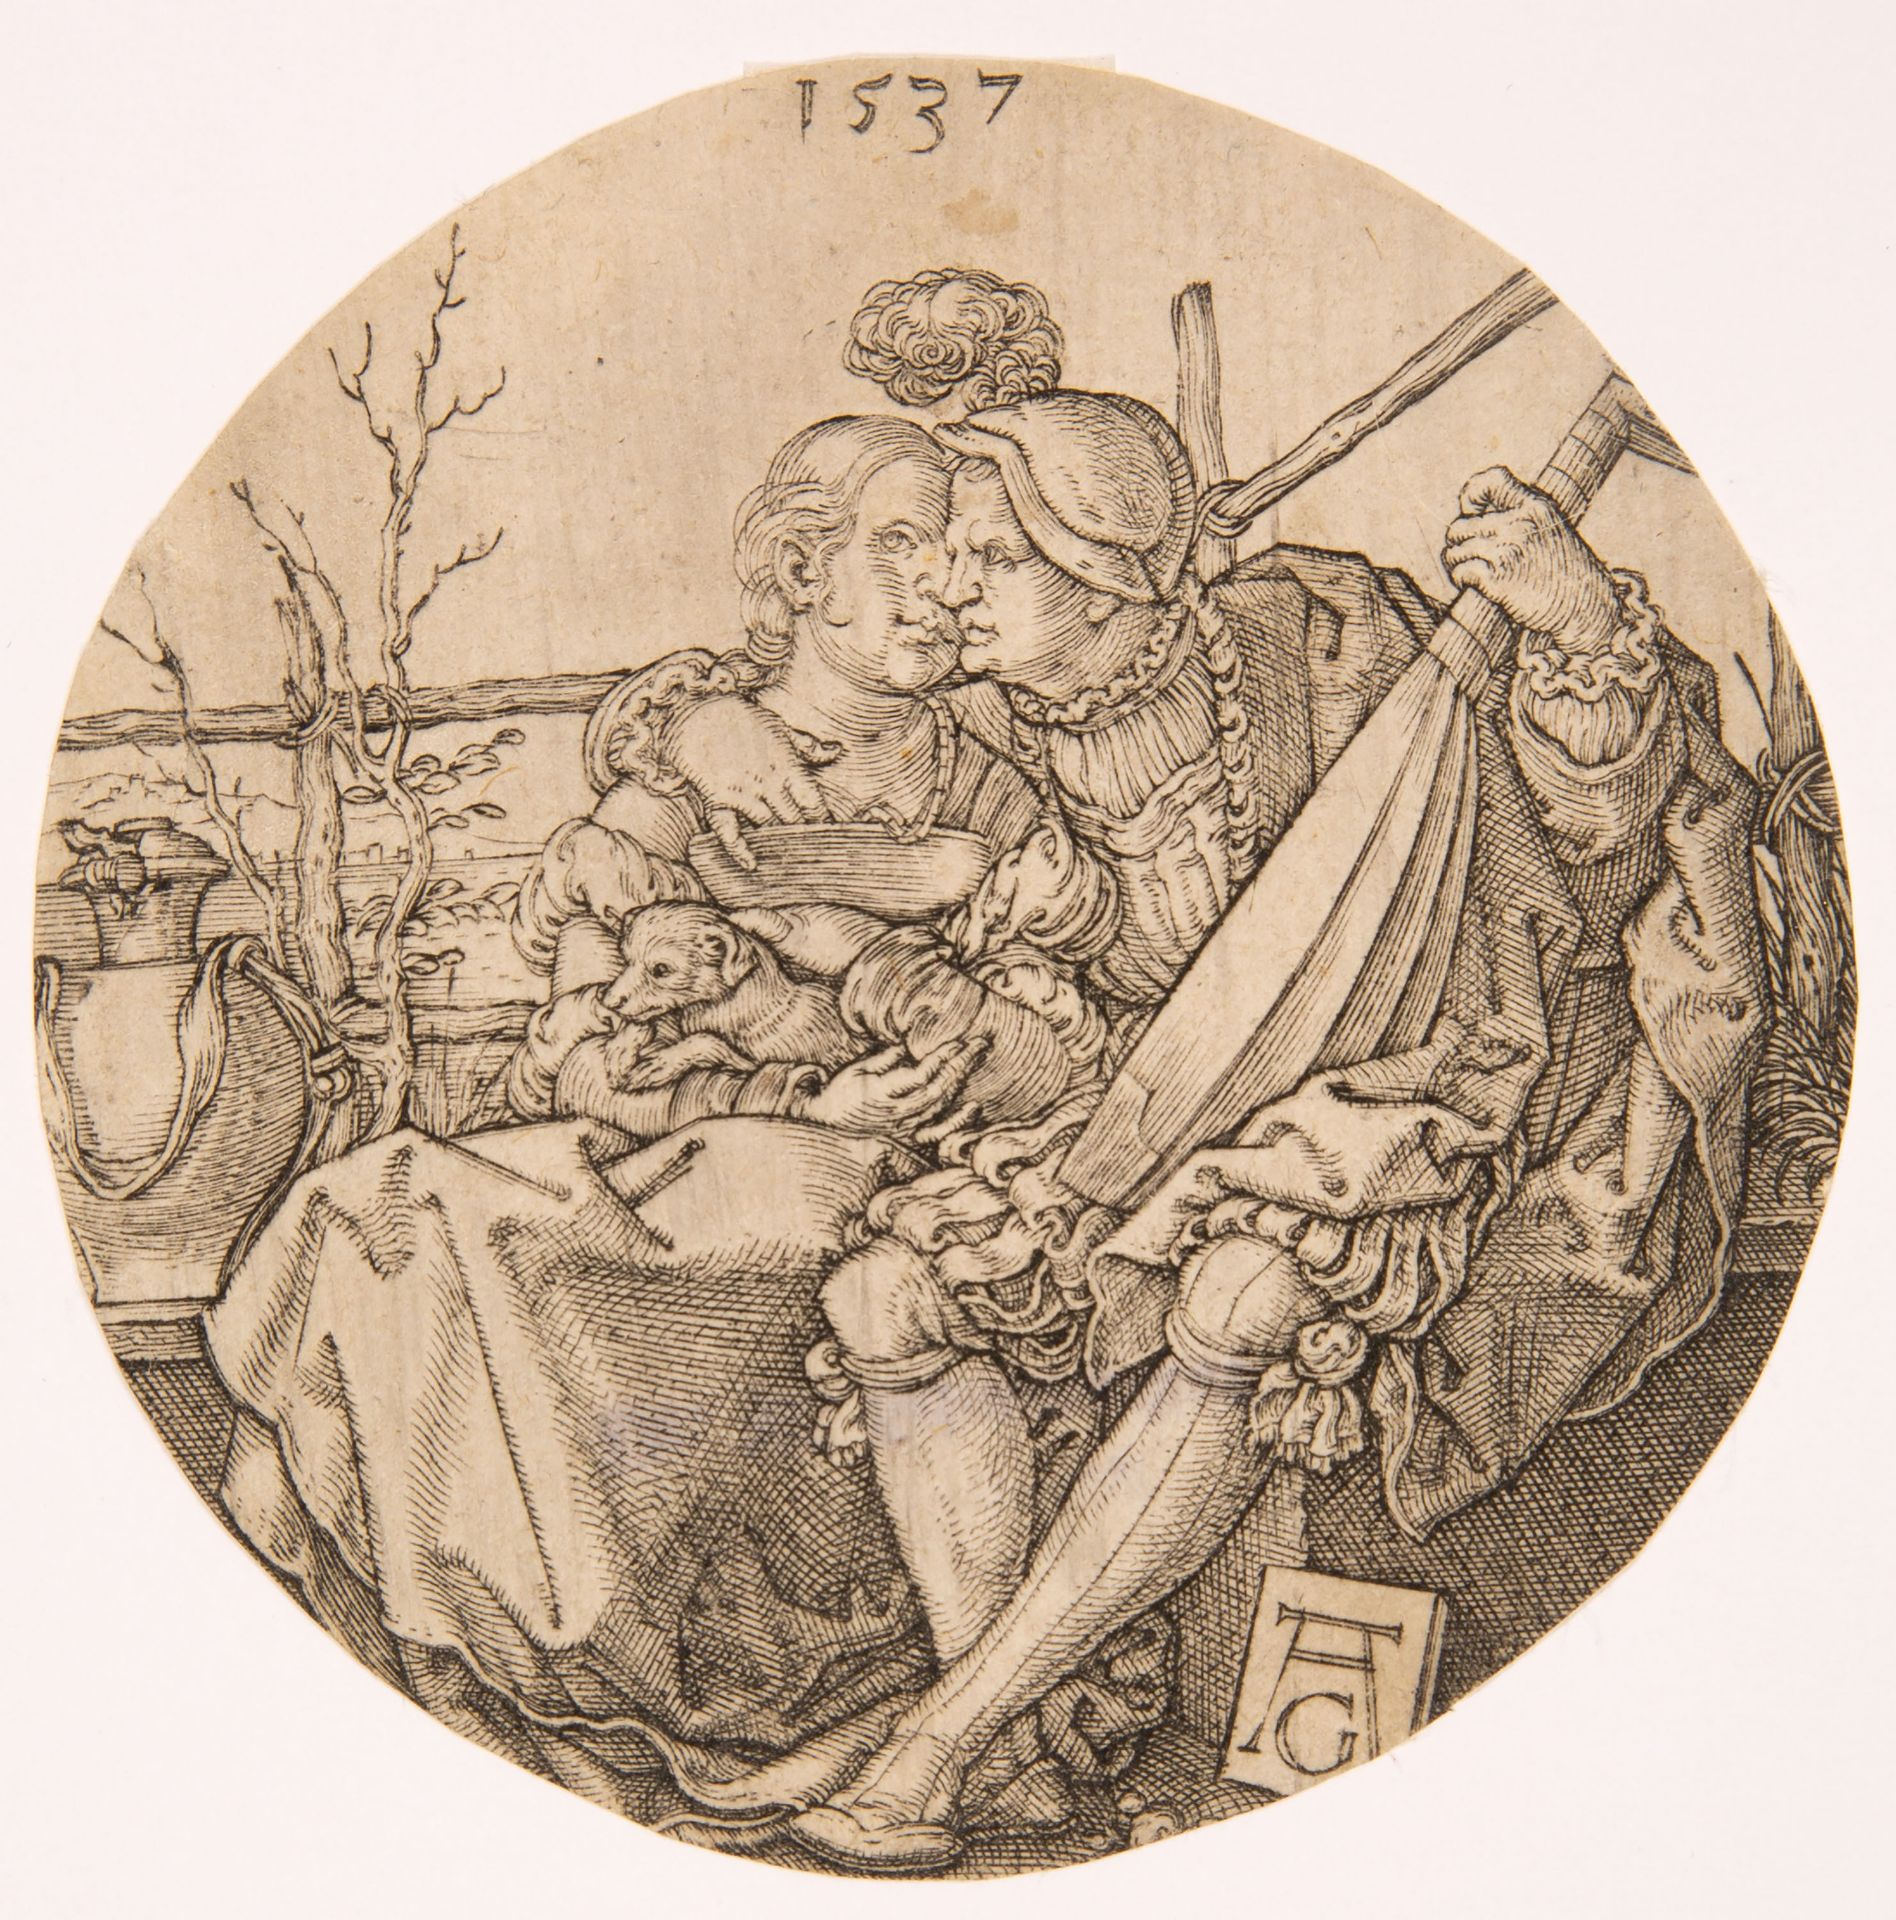 Heinrich Aldegrever. Ein Lautenspieler und seine Geliebte. 1537. Kupferstich. New Hollstein 172.